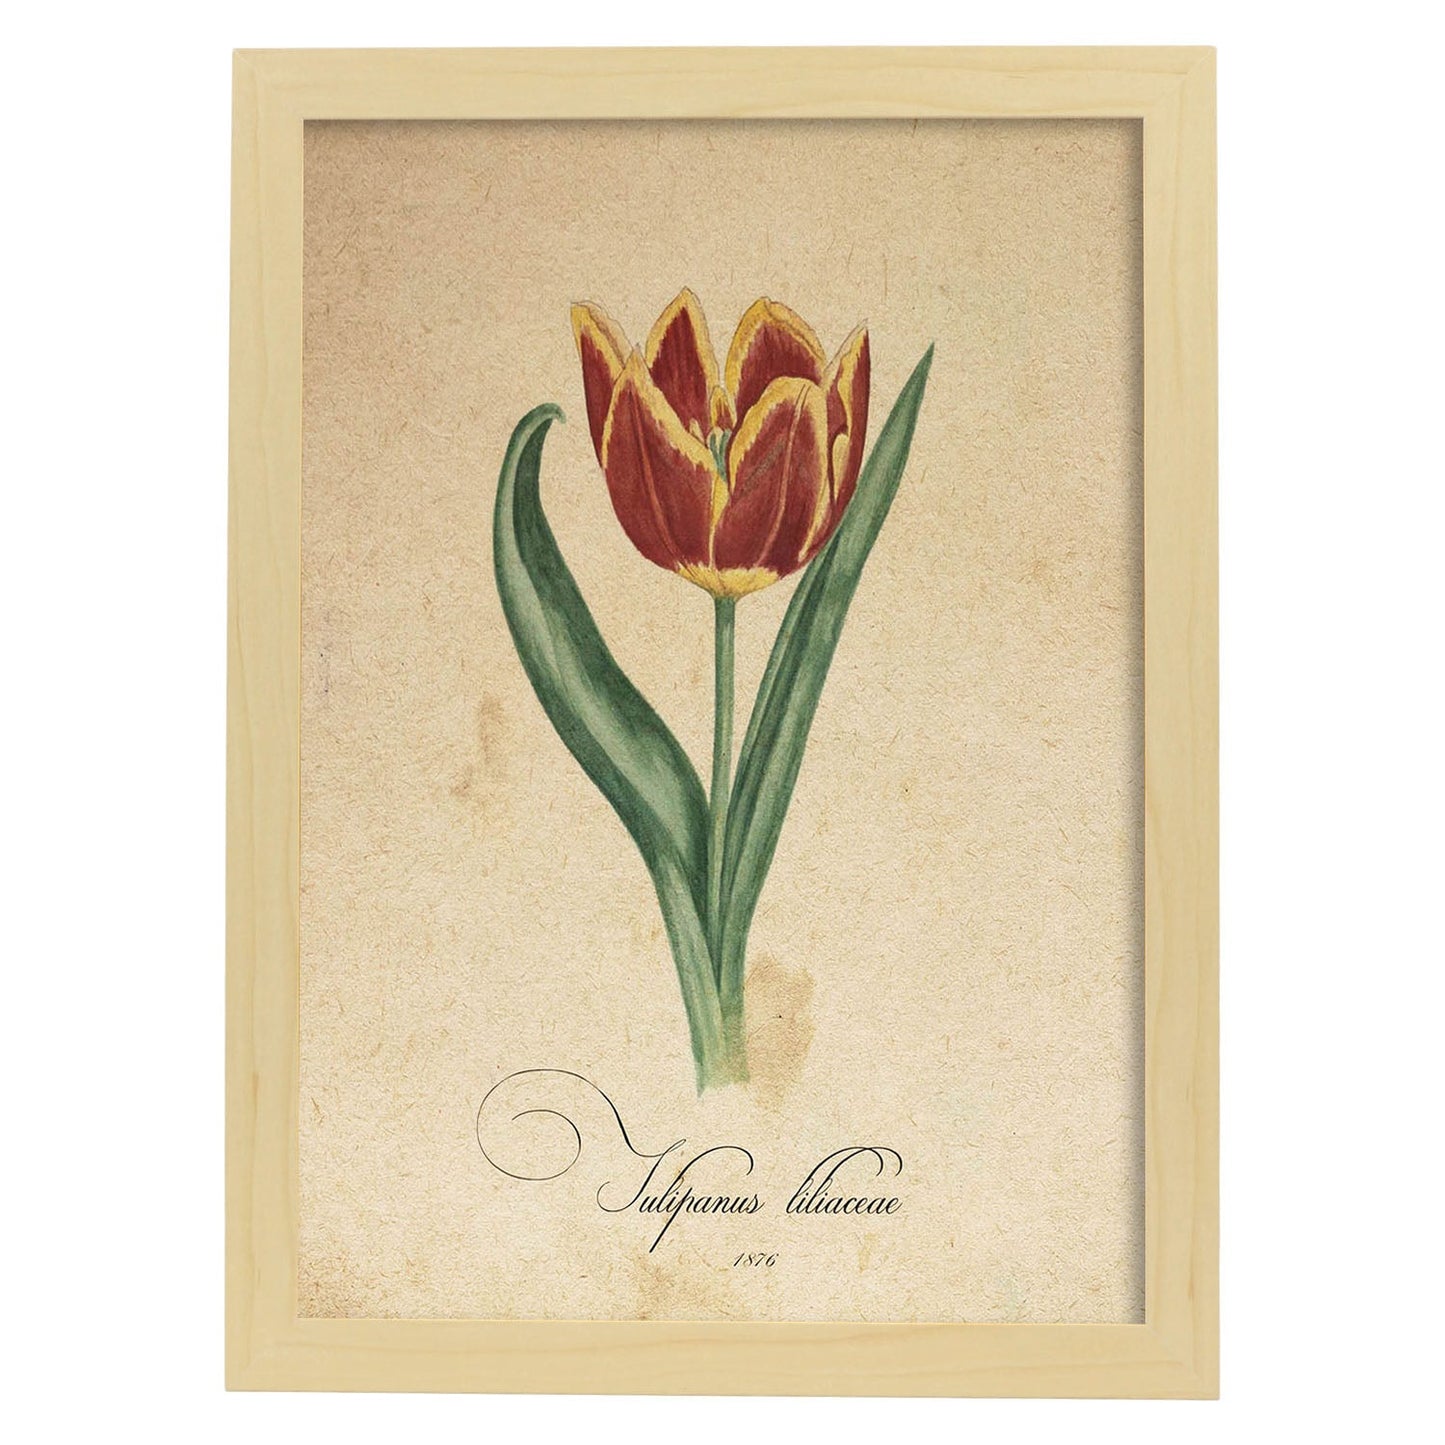 Poster de flores vintage. Lámina Liliaceae tulip con diseño vintage.-Artwork-Nacnic-A4-Marco Madera clara-Nacnic Estudio SL